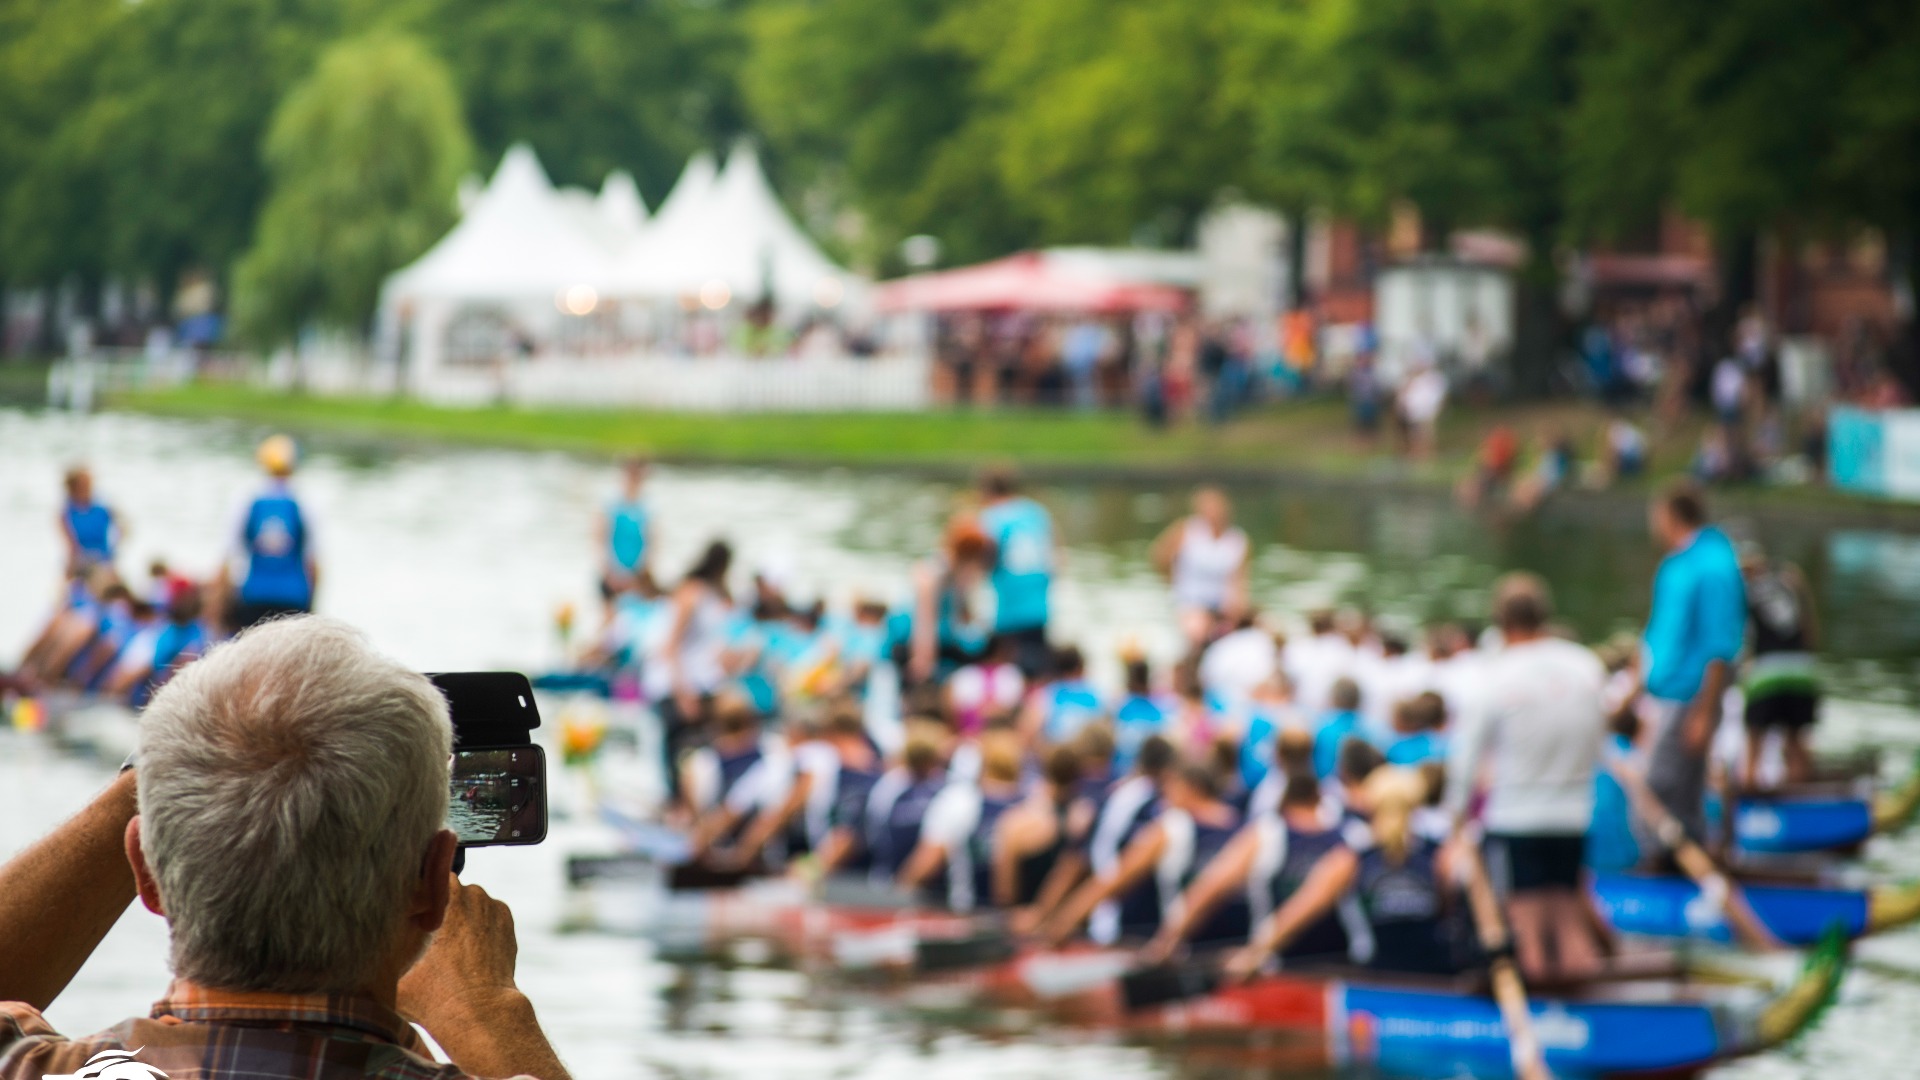 Schweriner Drachenbootfestival am Pfaffenteich 2019